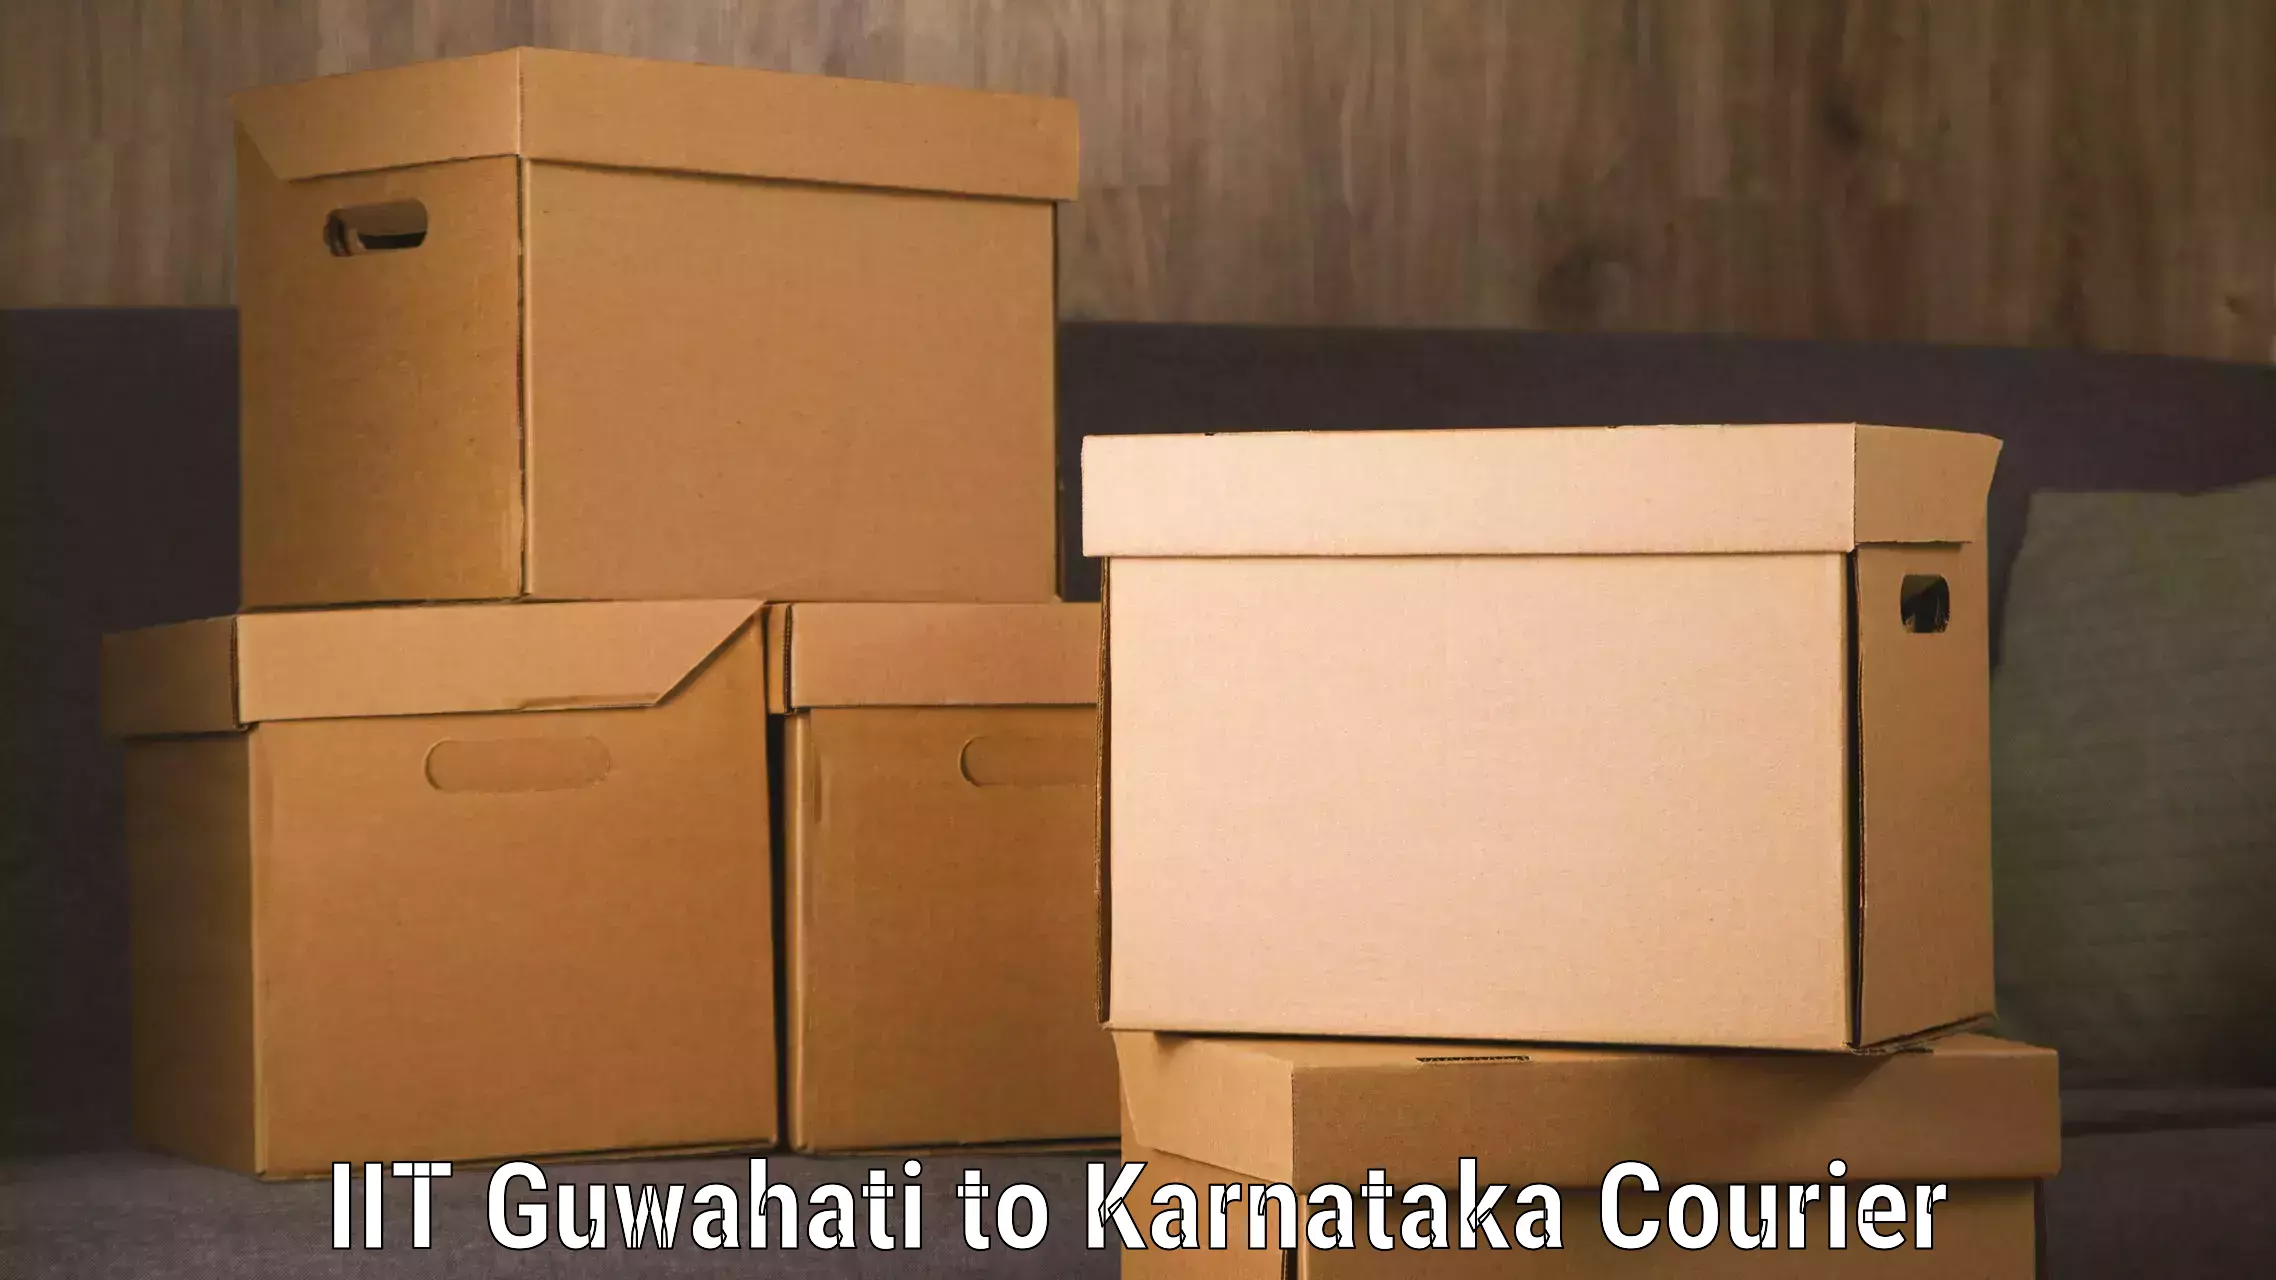 Luggage delivery app IIT Guwahati to Srirangapatna